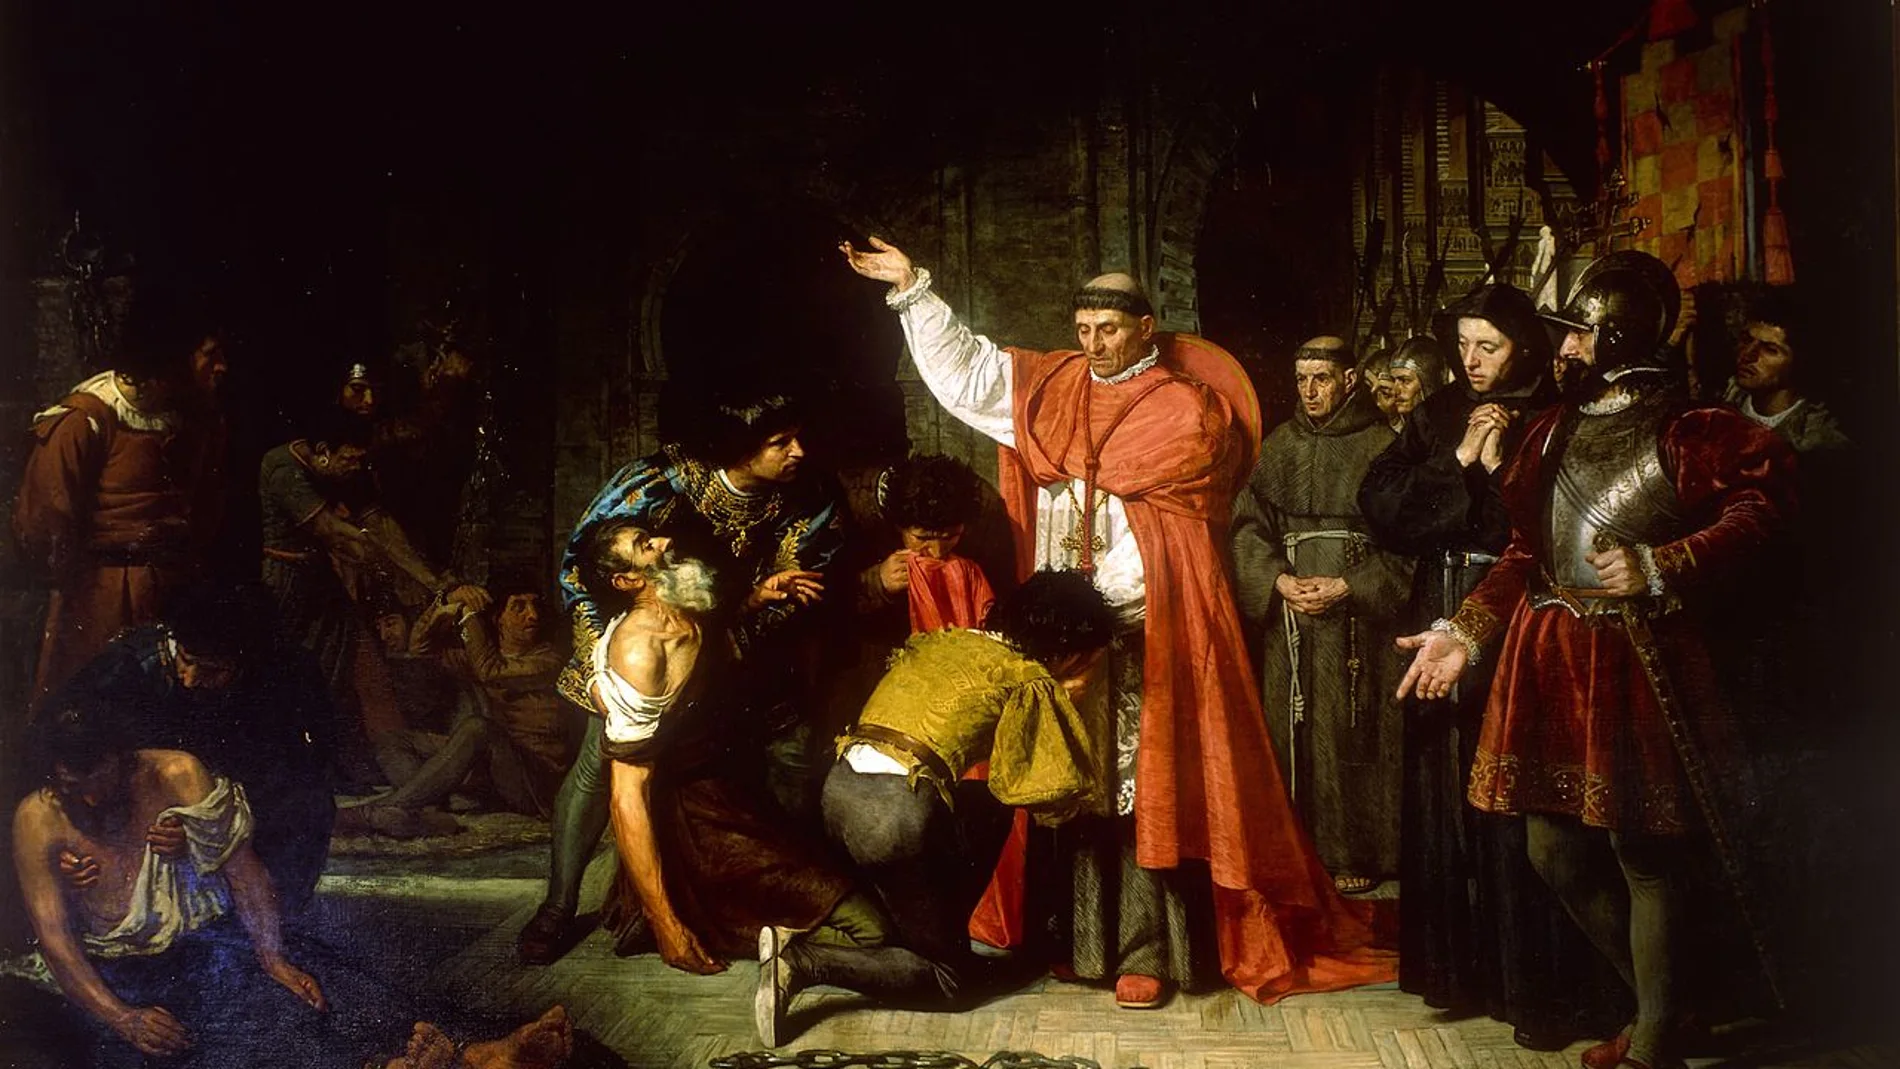 Lienzo del artista español Francisco Jover y Casanova en el que se representa al Cardenal Cisneros liberando a unos prisioneros cristianos tras la conquista de Orán (Argelia)